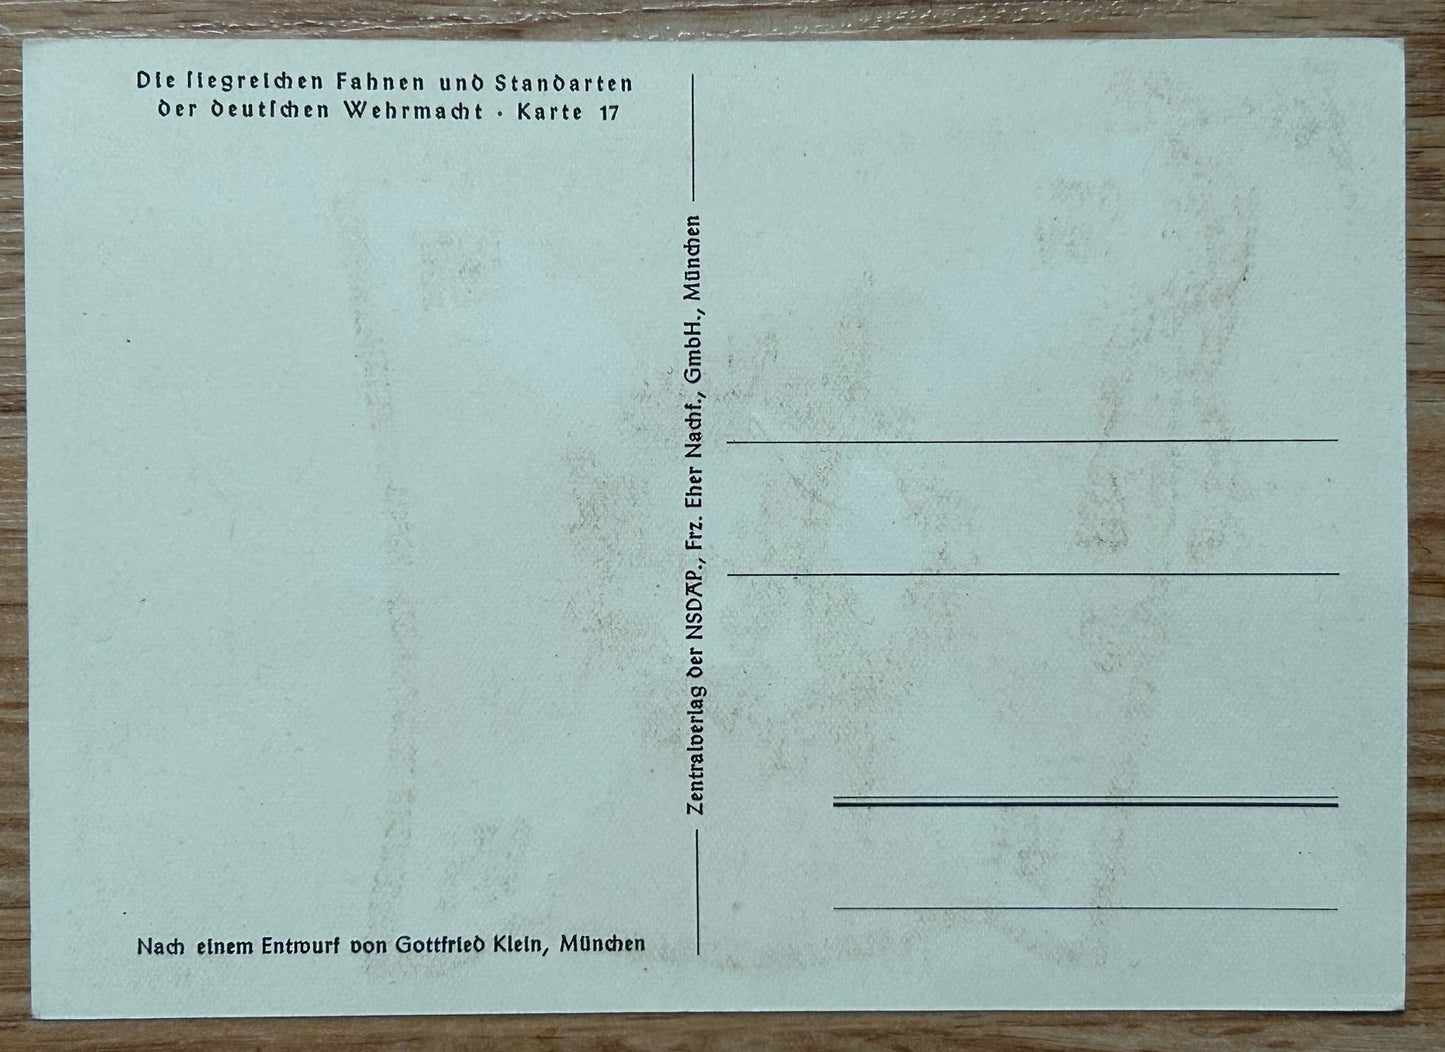 Flakartillerie art postcard - Gottfried Klein standards series